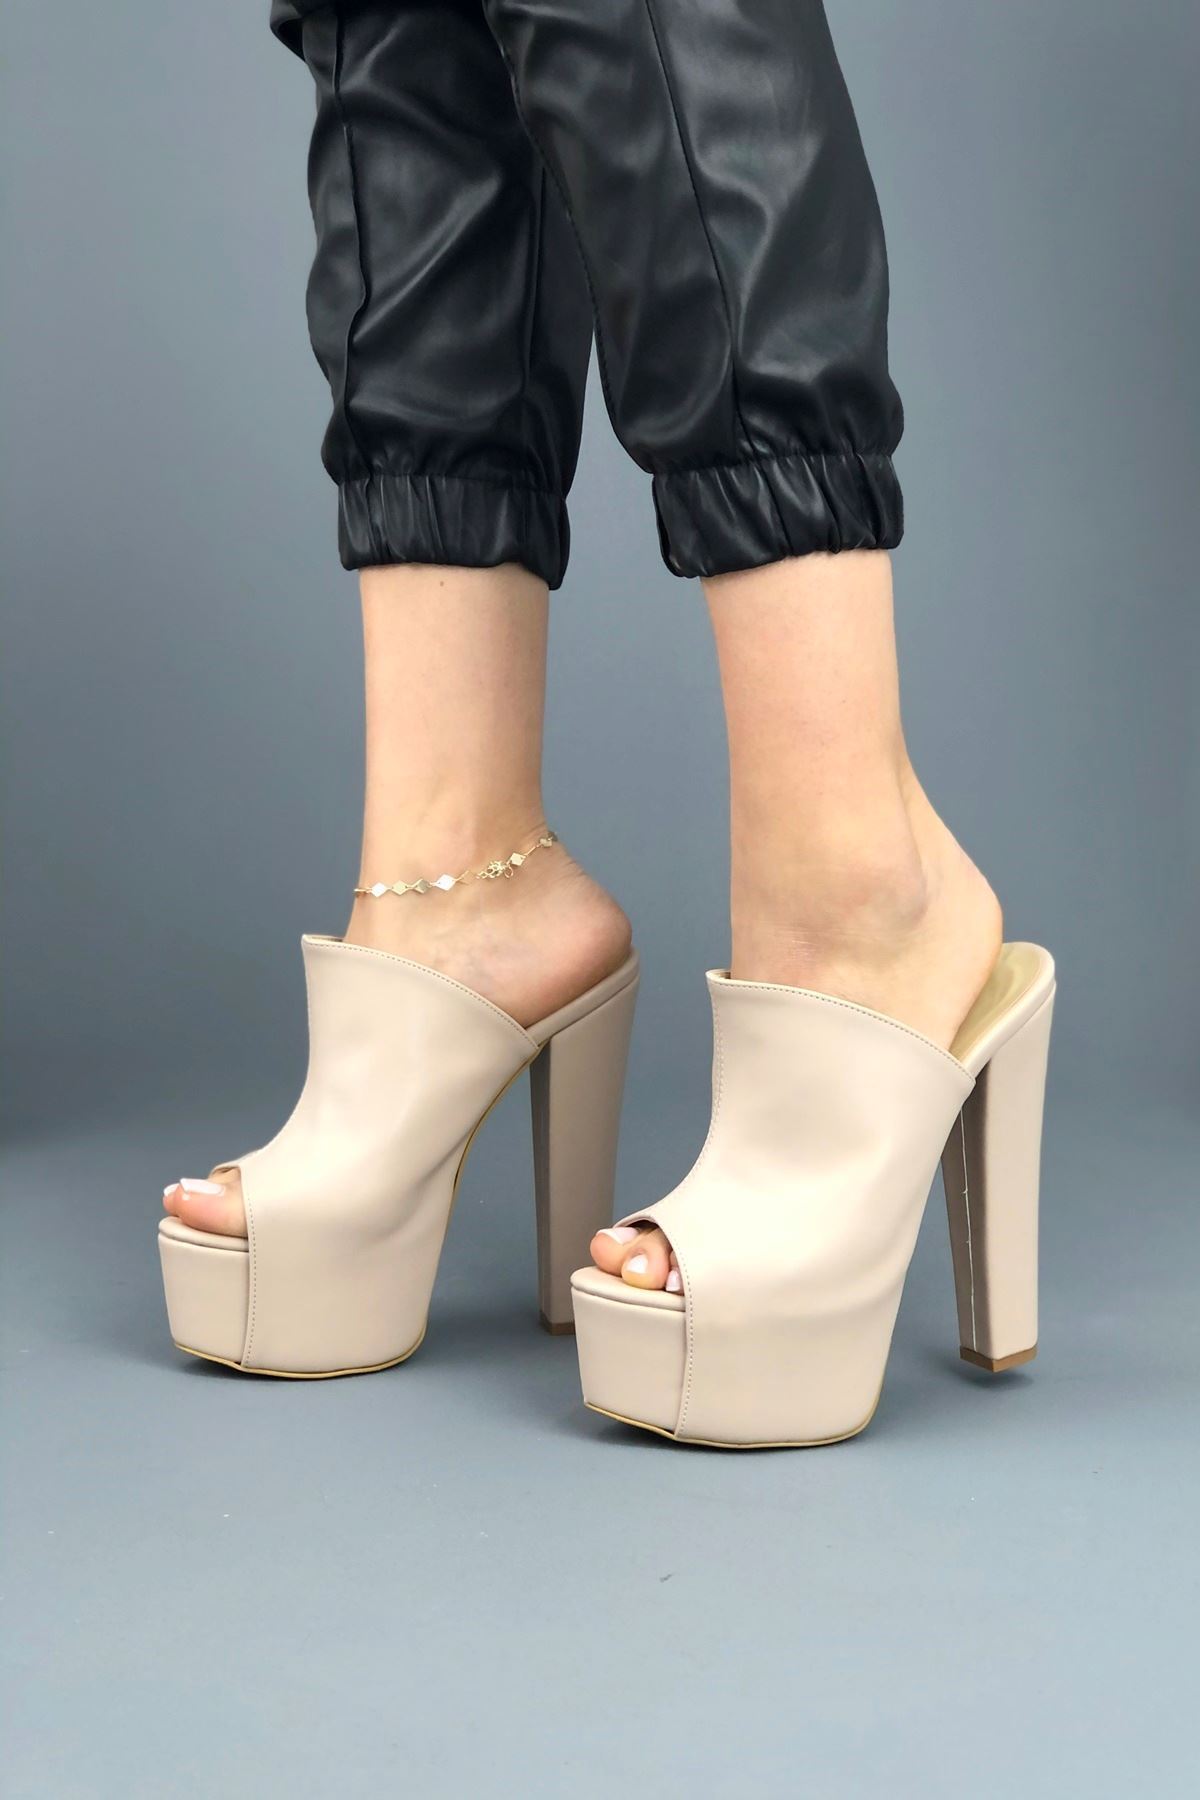 Simsi Ten Cilt Kadın Topuklu Ayakkkabı